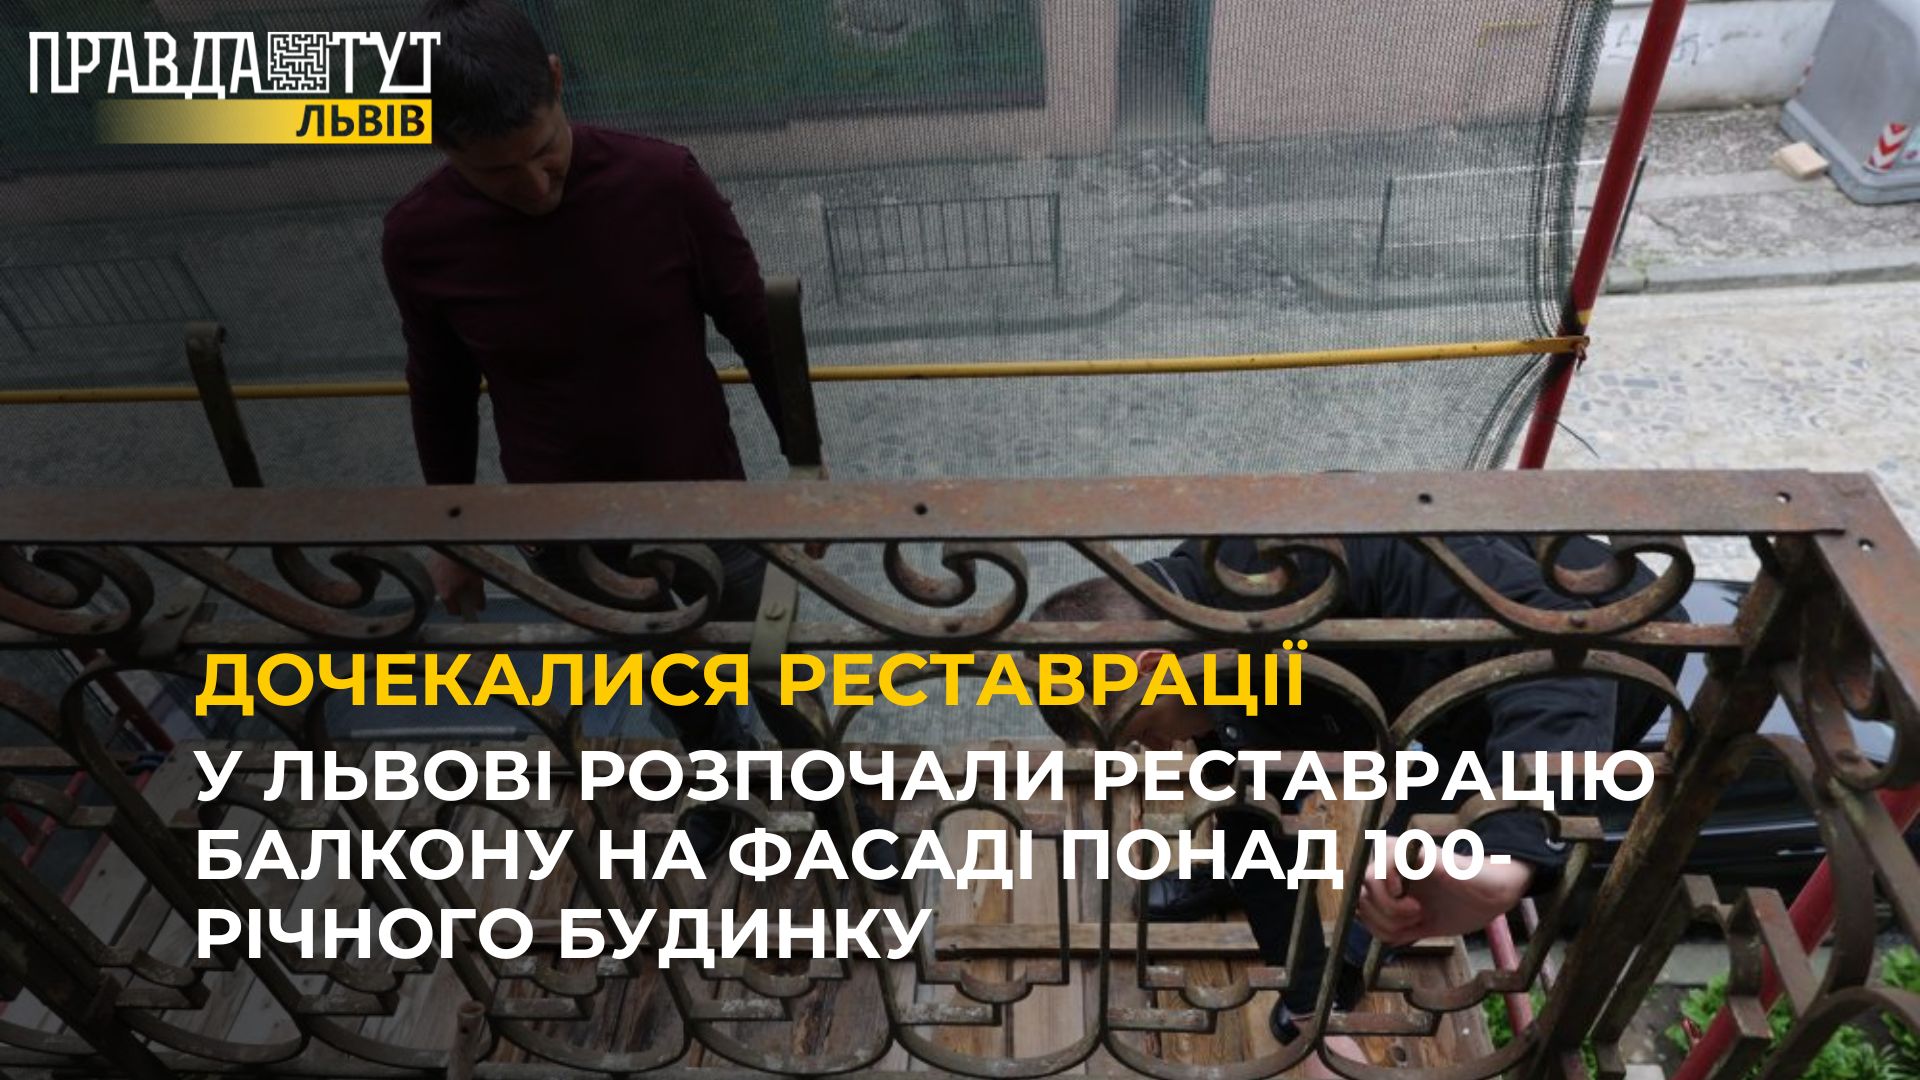 У Львові розпочали реставрацію балкону на фасаді понад 100-річного будинку